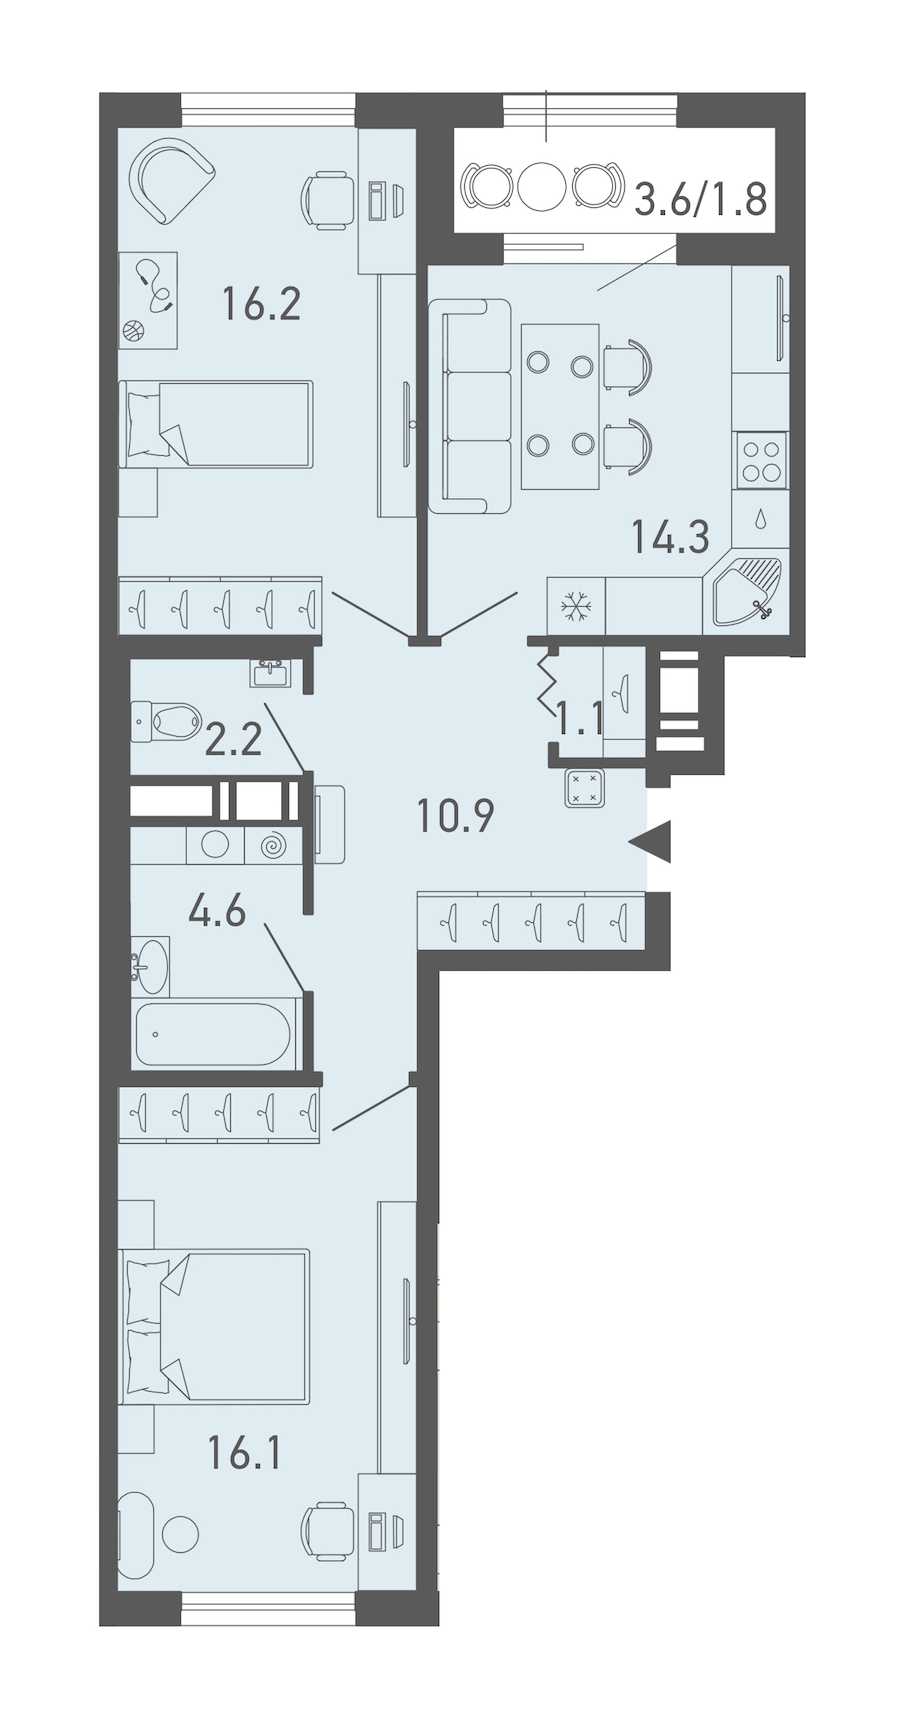 Двухкомнатная квартира в Эталон ЛенСпецСМУ: площадь 67.2 м2 , этаж: 3 – купить в Санкт-Петербурге